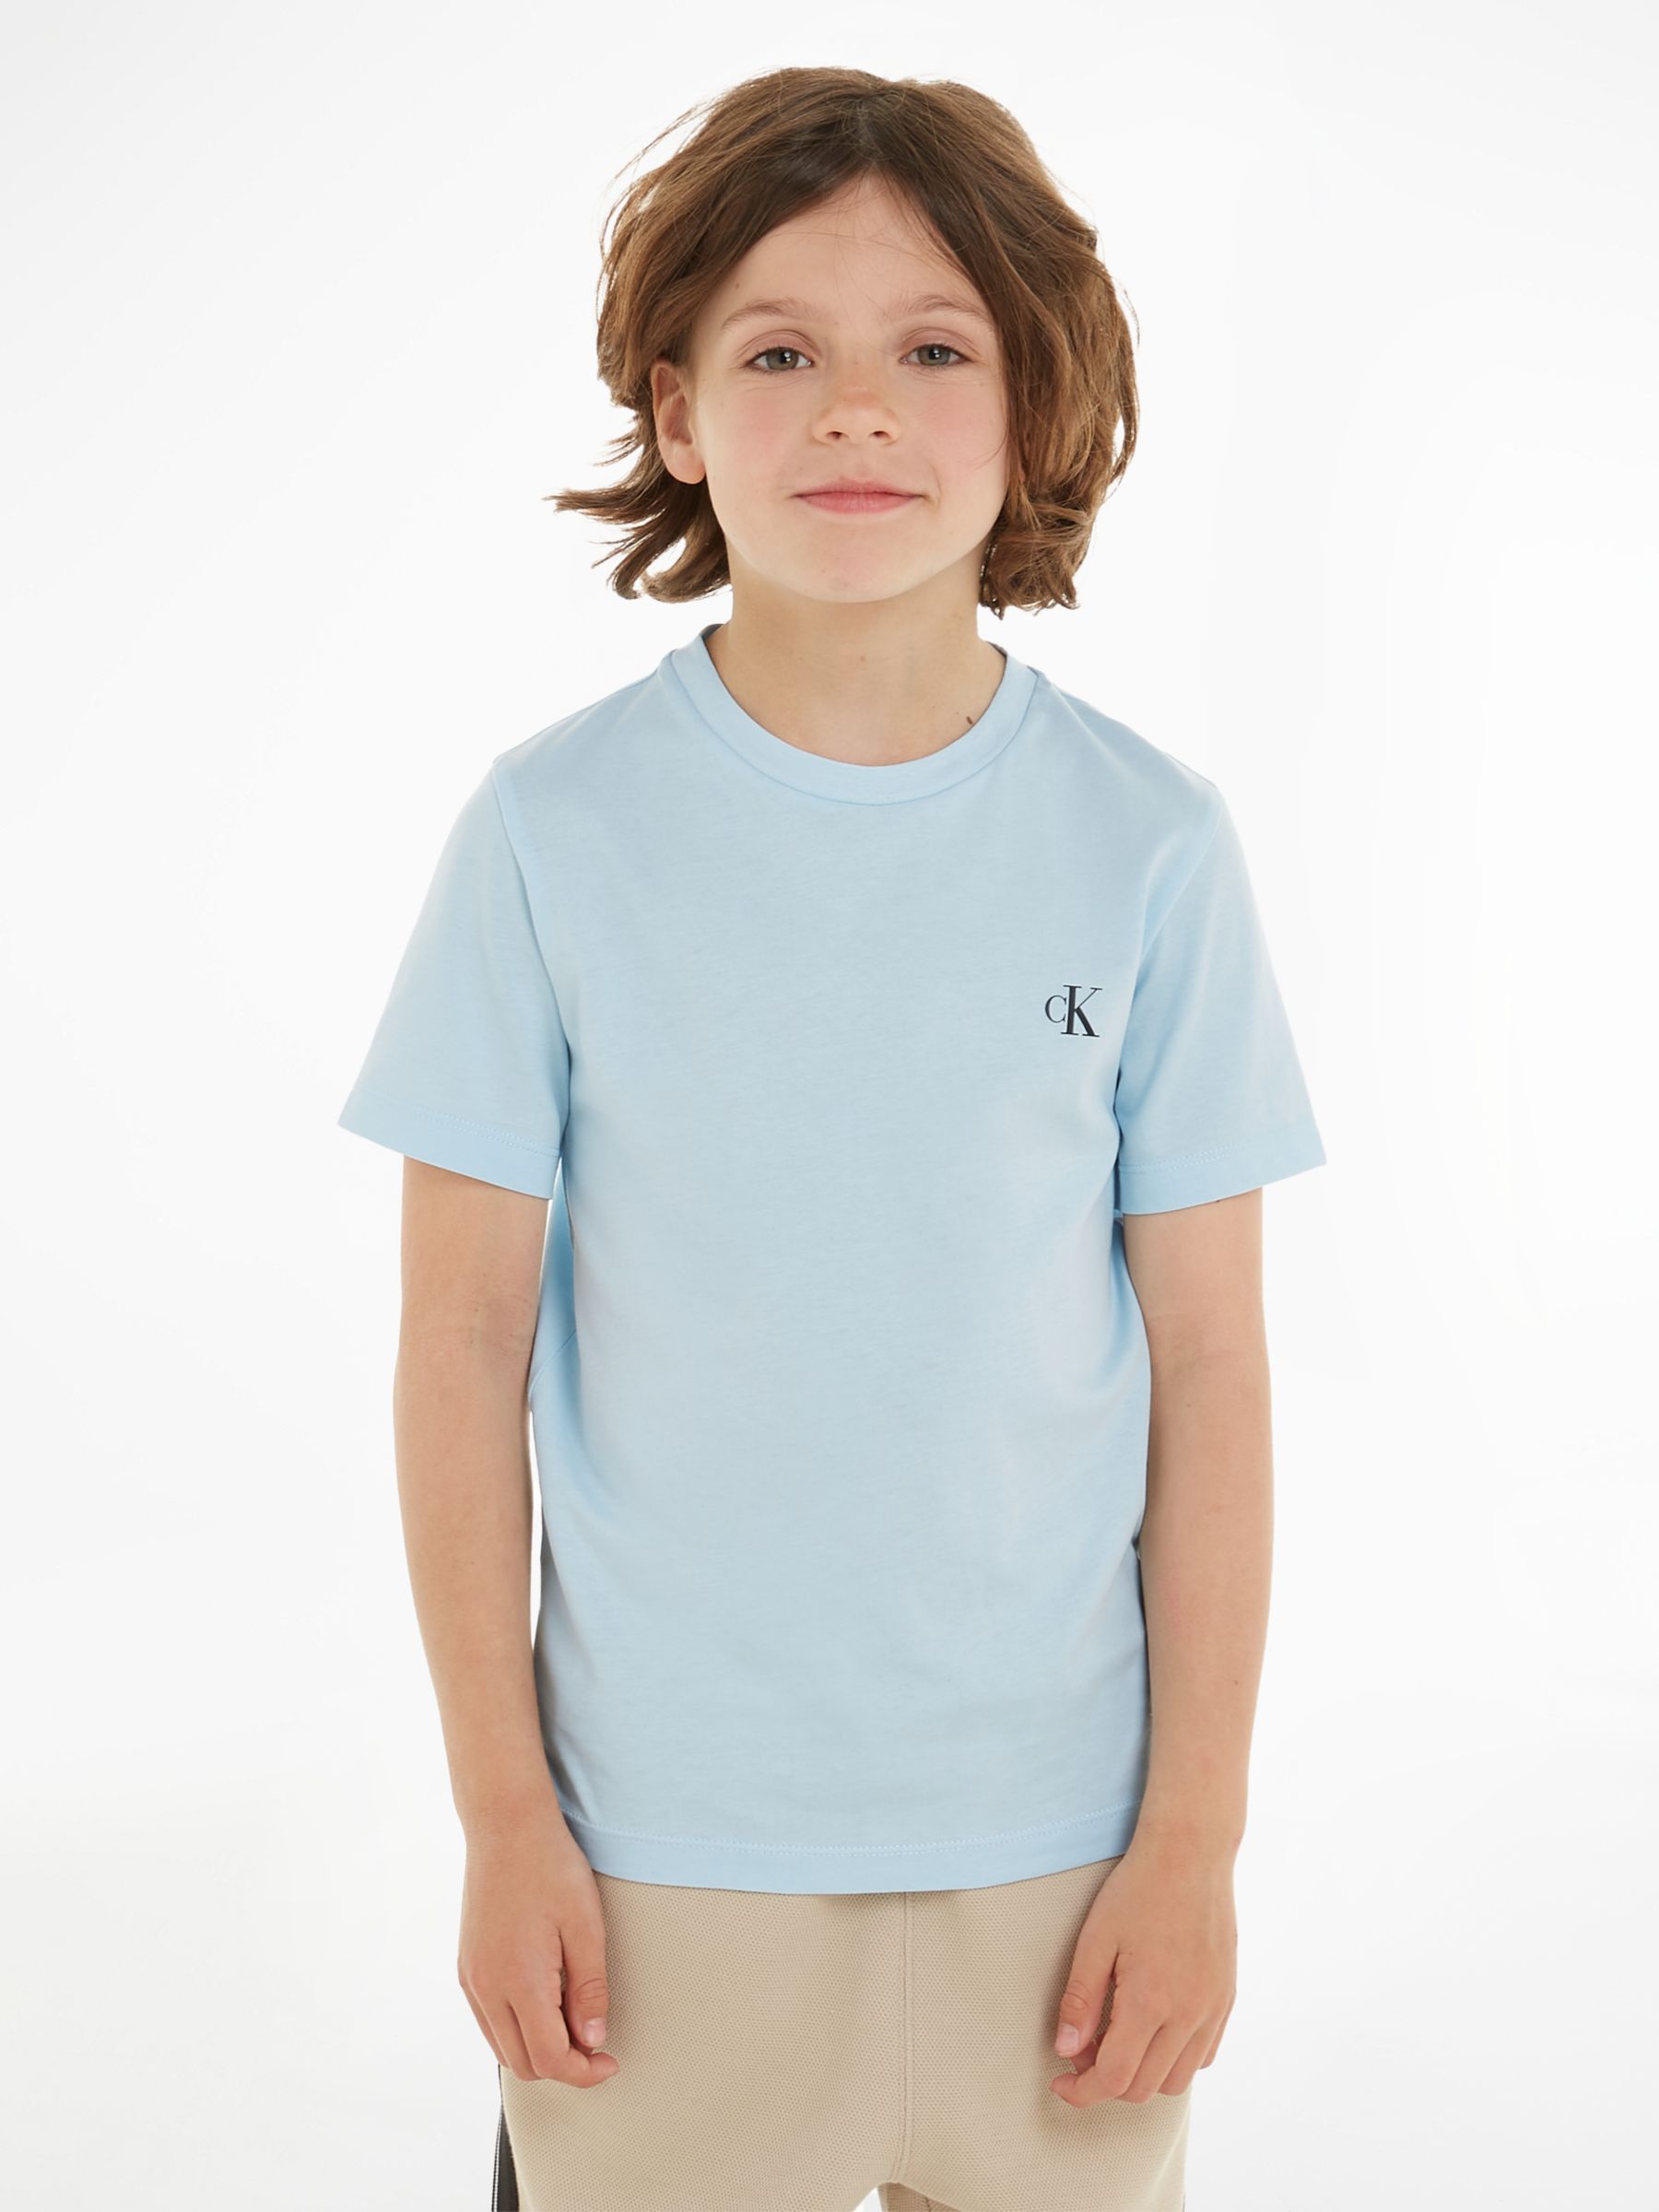 Calvin Klein Kids\' Cotton Blue/Ck Sleeve Partners John of & Pack Lewis T-Shirts, Short 2, at Keepsake Monogram Black